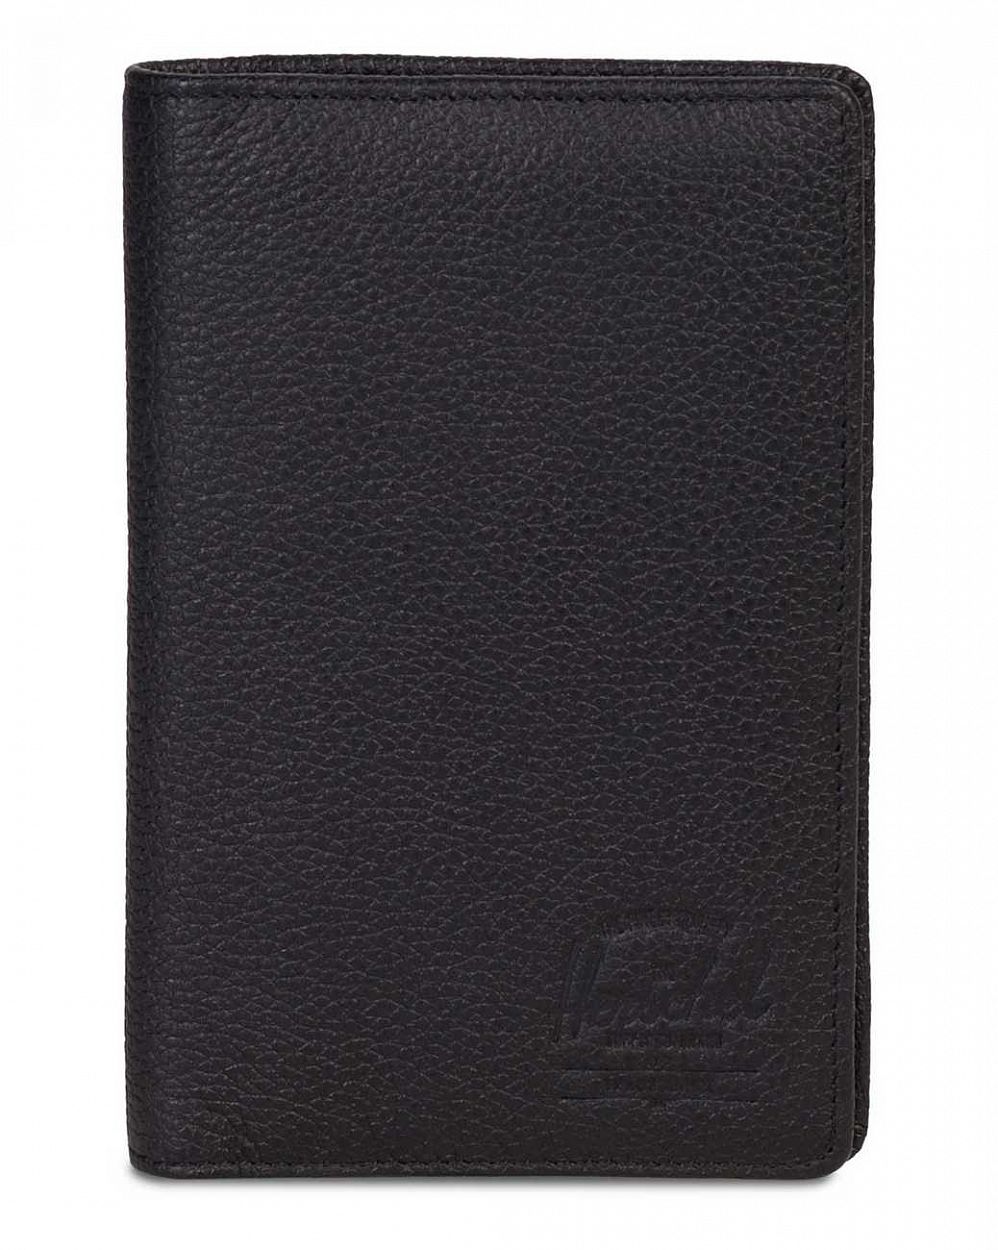 Обложка органайзер для паспорта Herschel Search Leather RFID Black отзывы